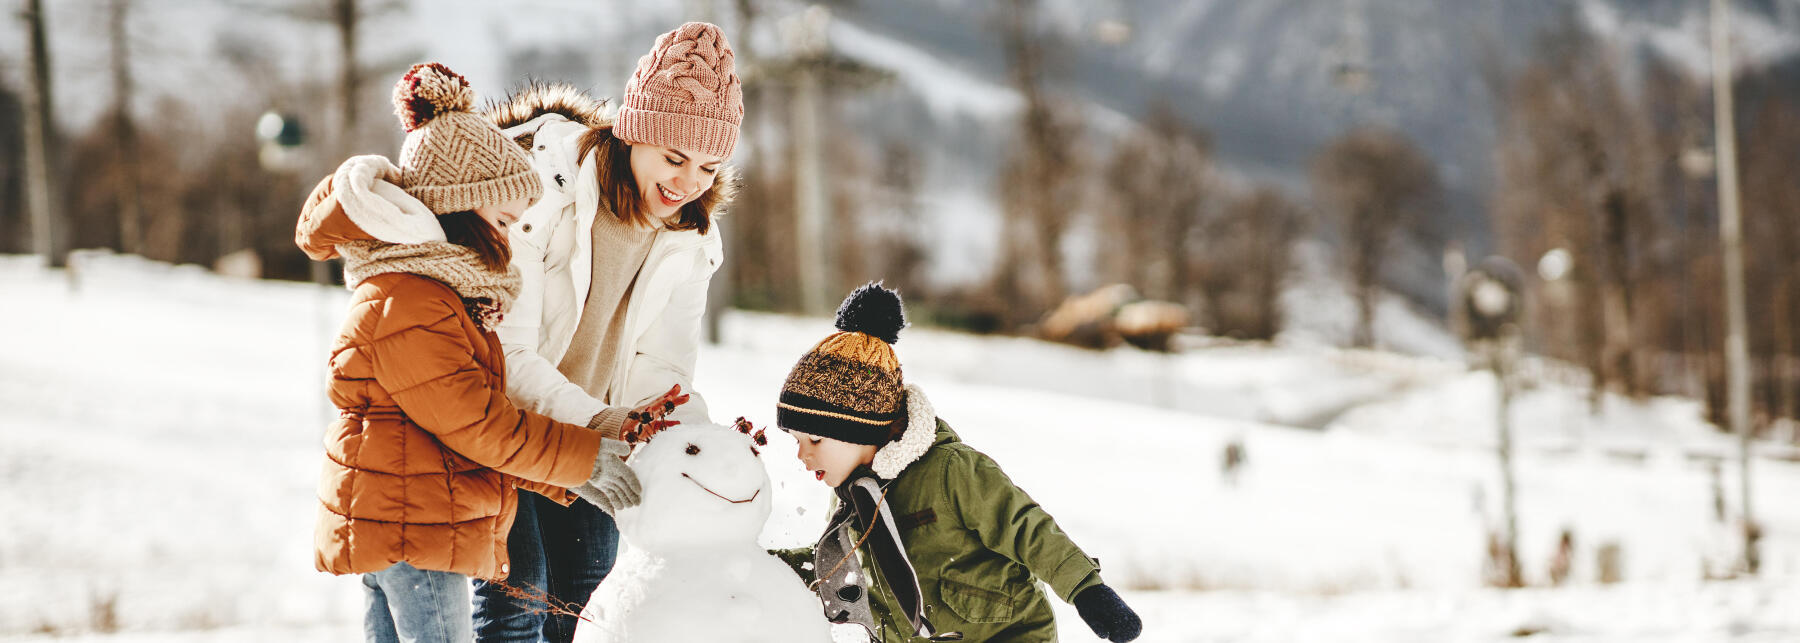 Comment bien habiller ses enfants en hiver?